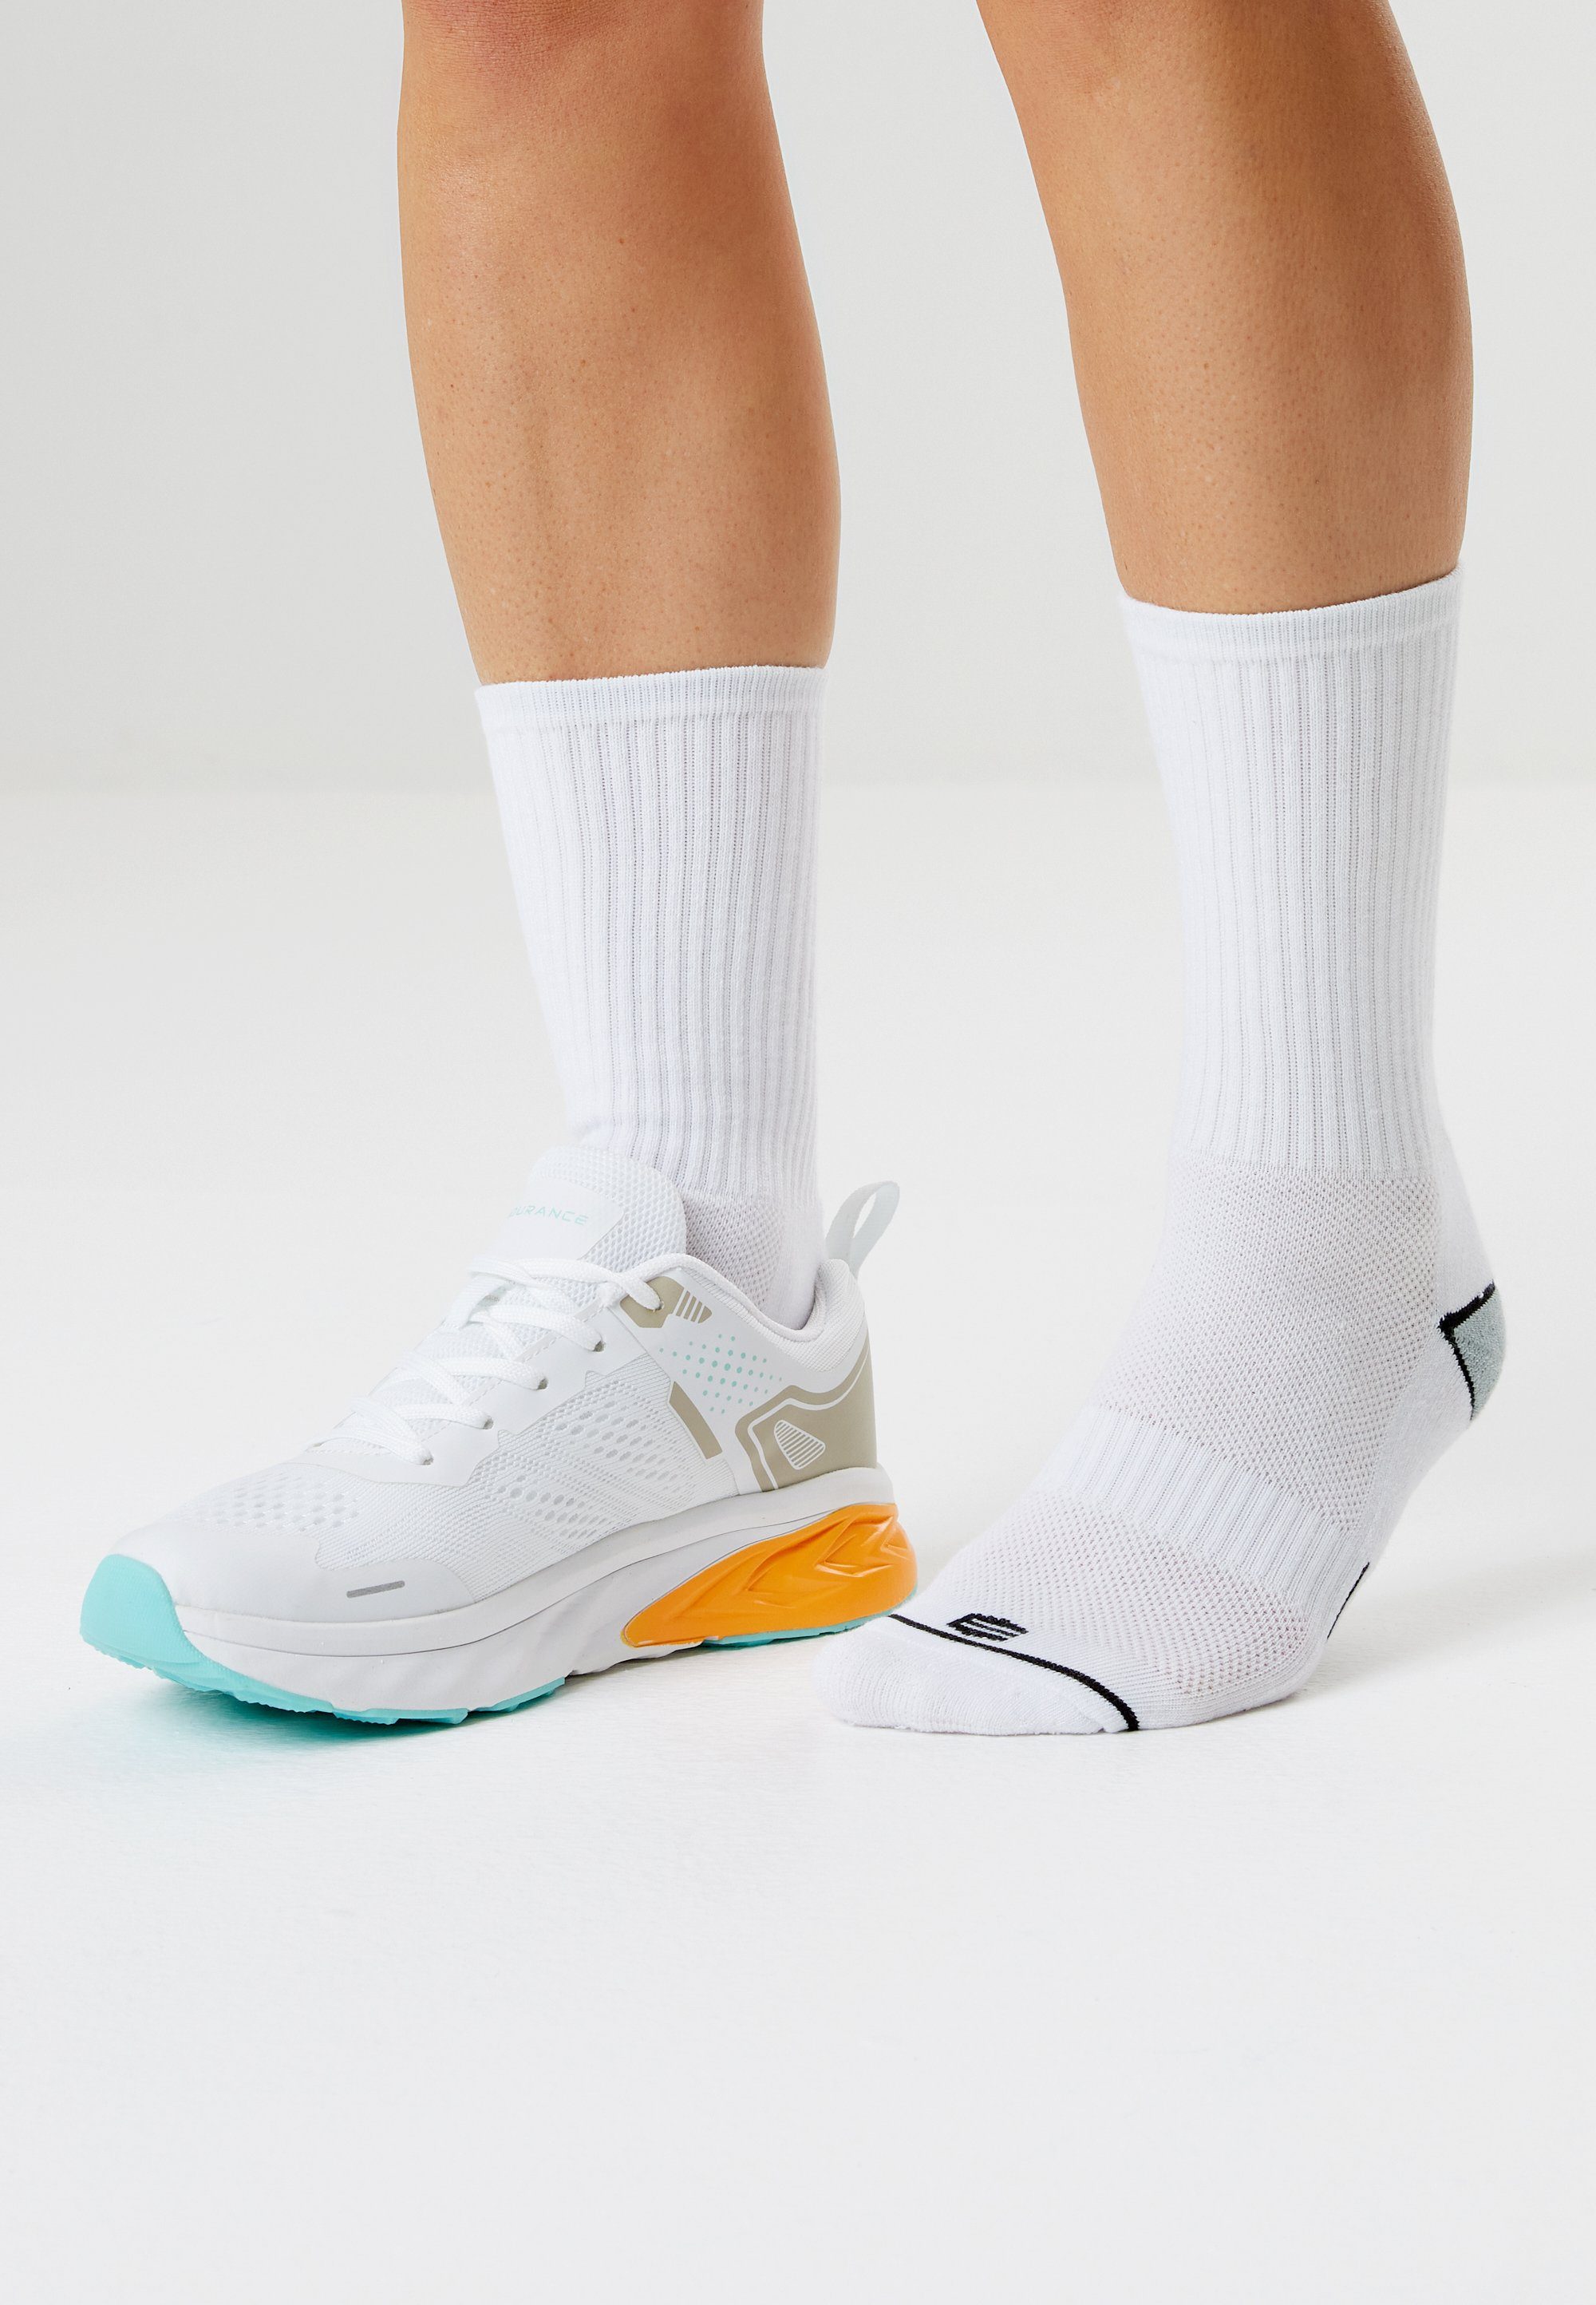 ENDURANCE in weiß (8-Paar) Hoope Socken atmungsaktiver Qualität